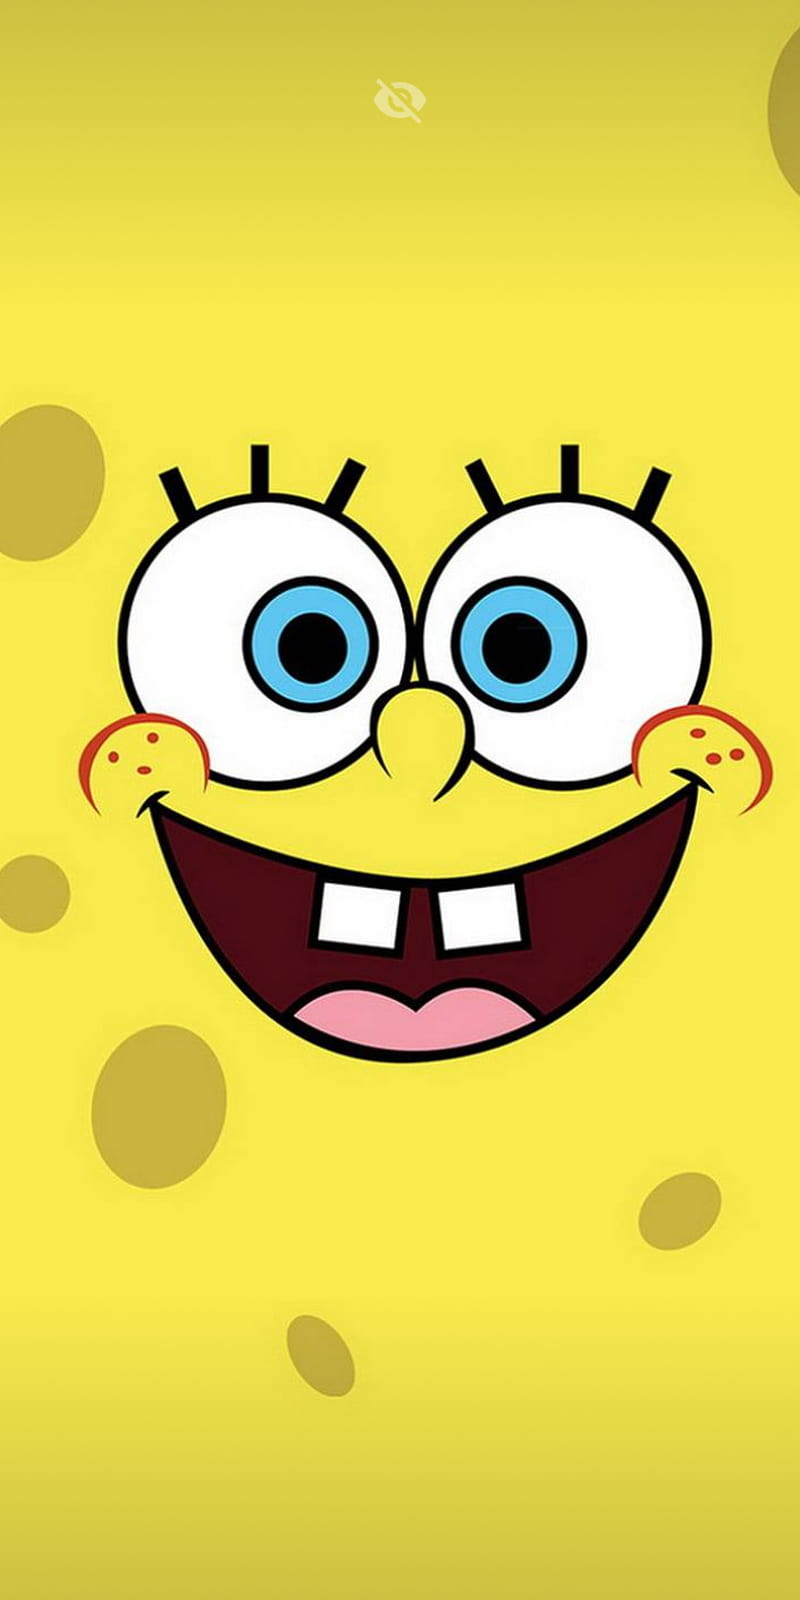 Bob Esponja Spongebob Squarepants transparent background PNG clipart   HiClipart